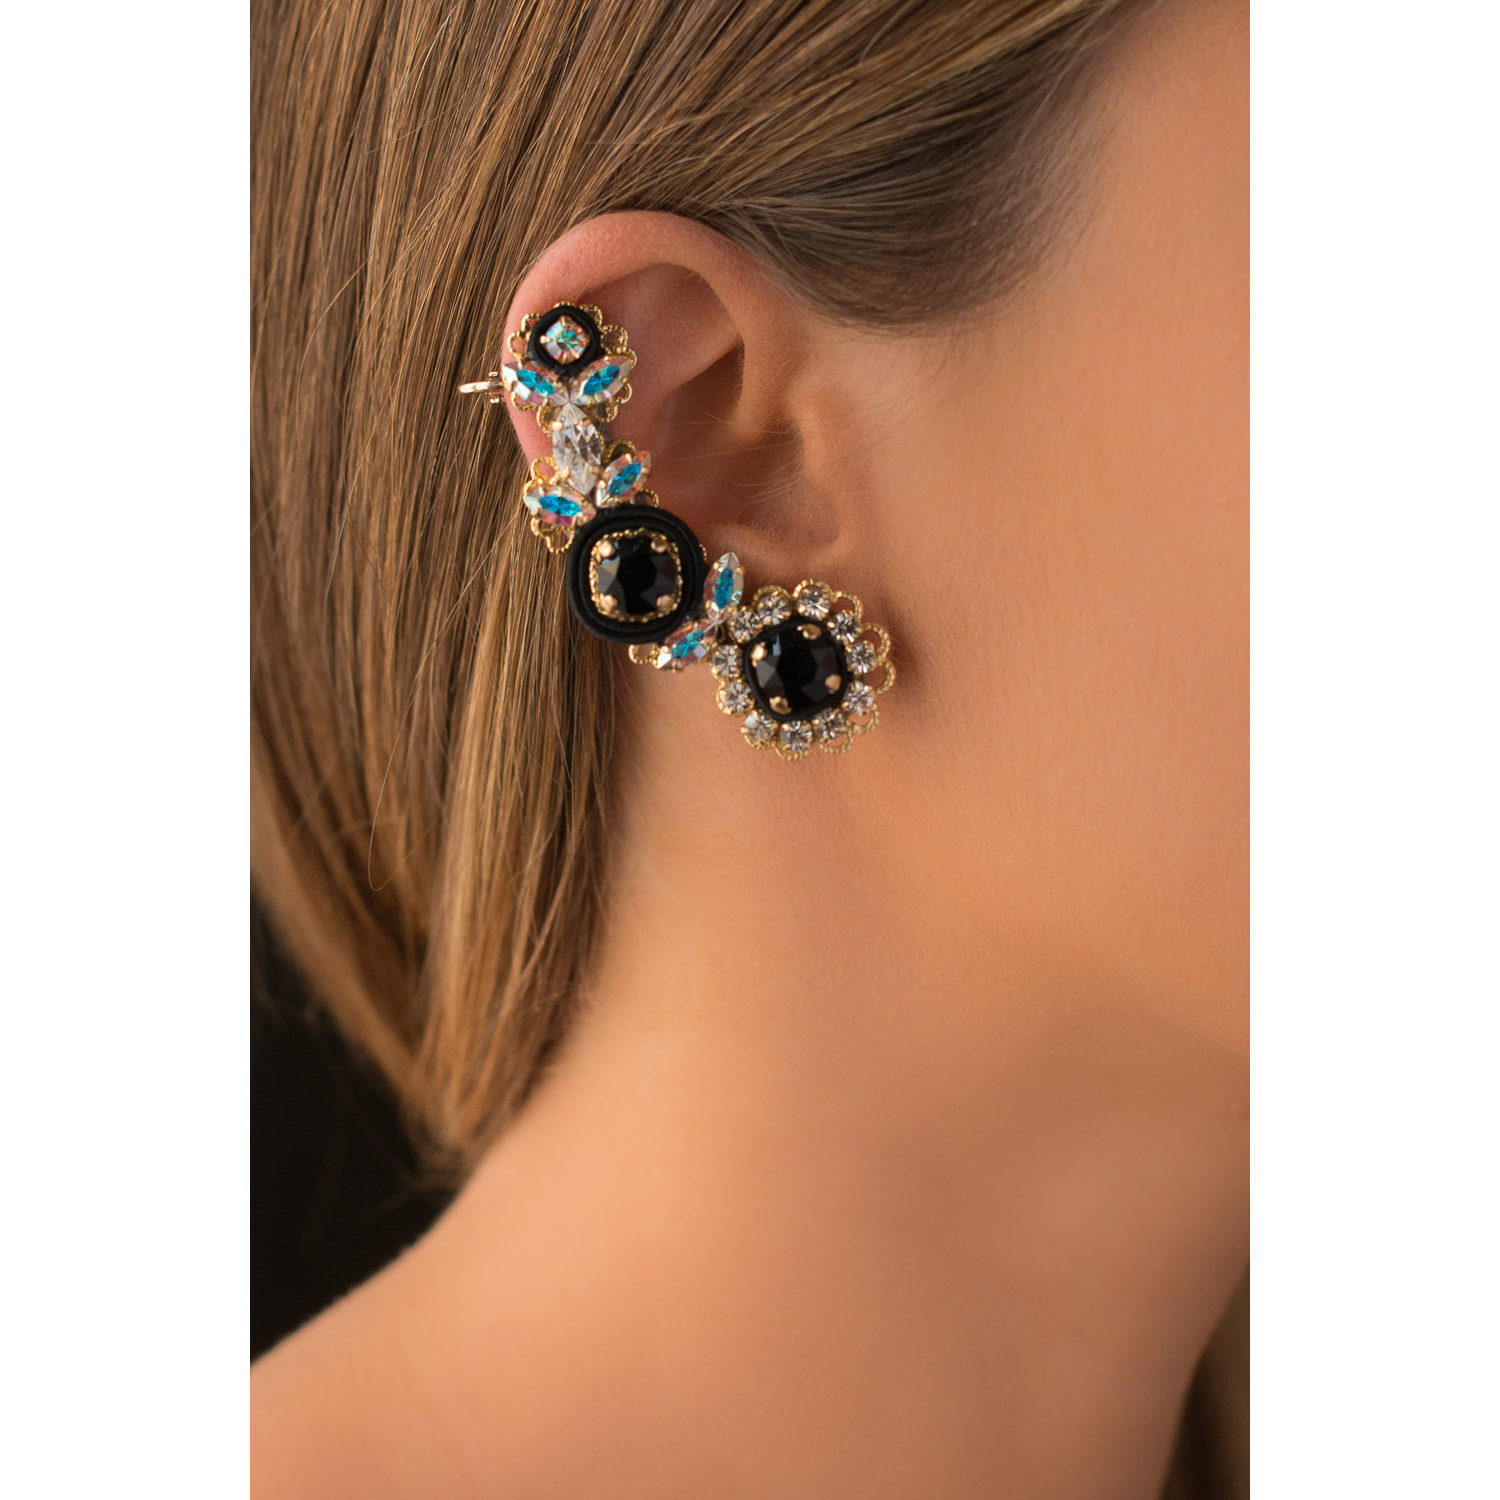 Ear cuff orecchini donna foglie e fiori cristalli swarovski e zirconi colorati, dettagli in stoffa seta nero